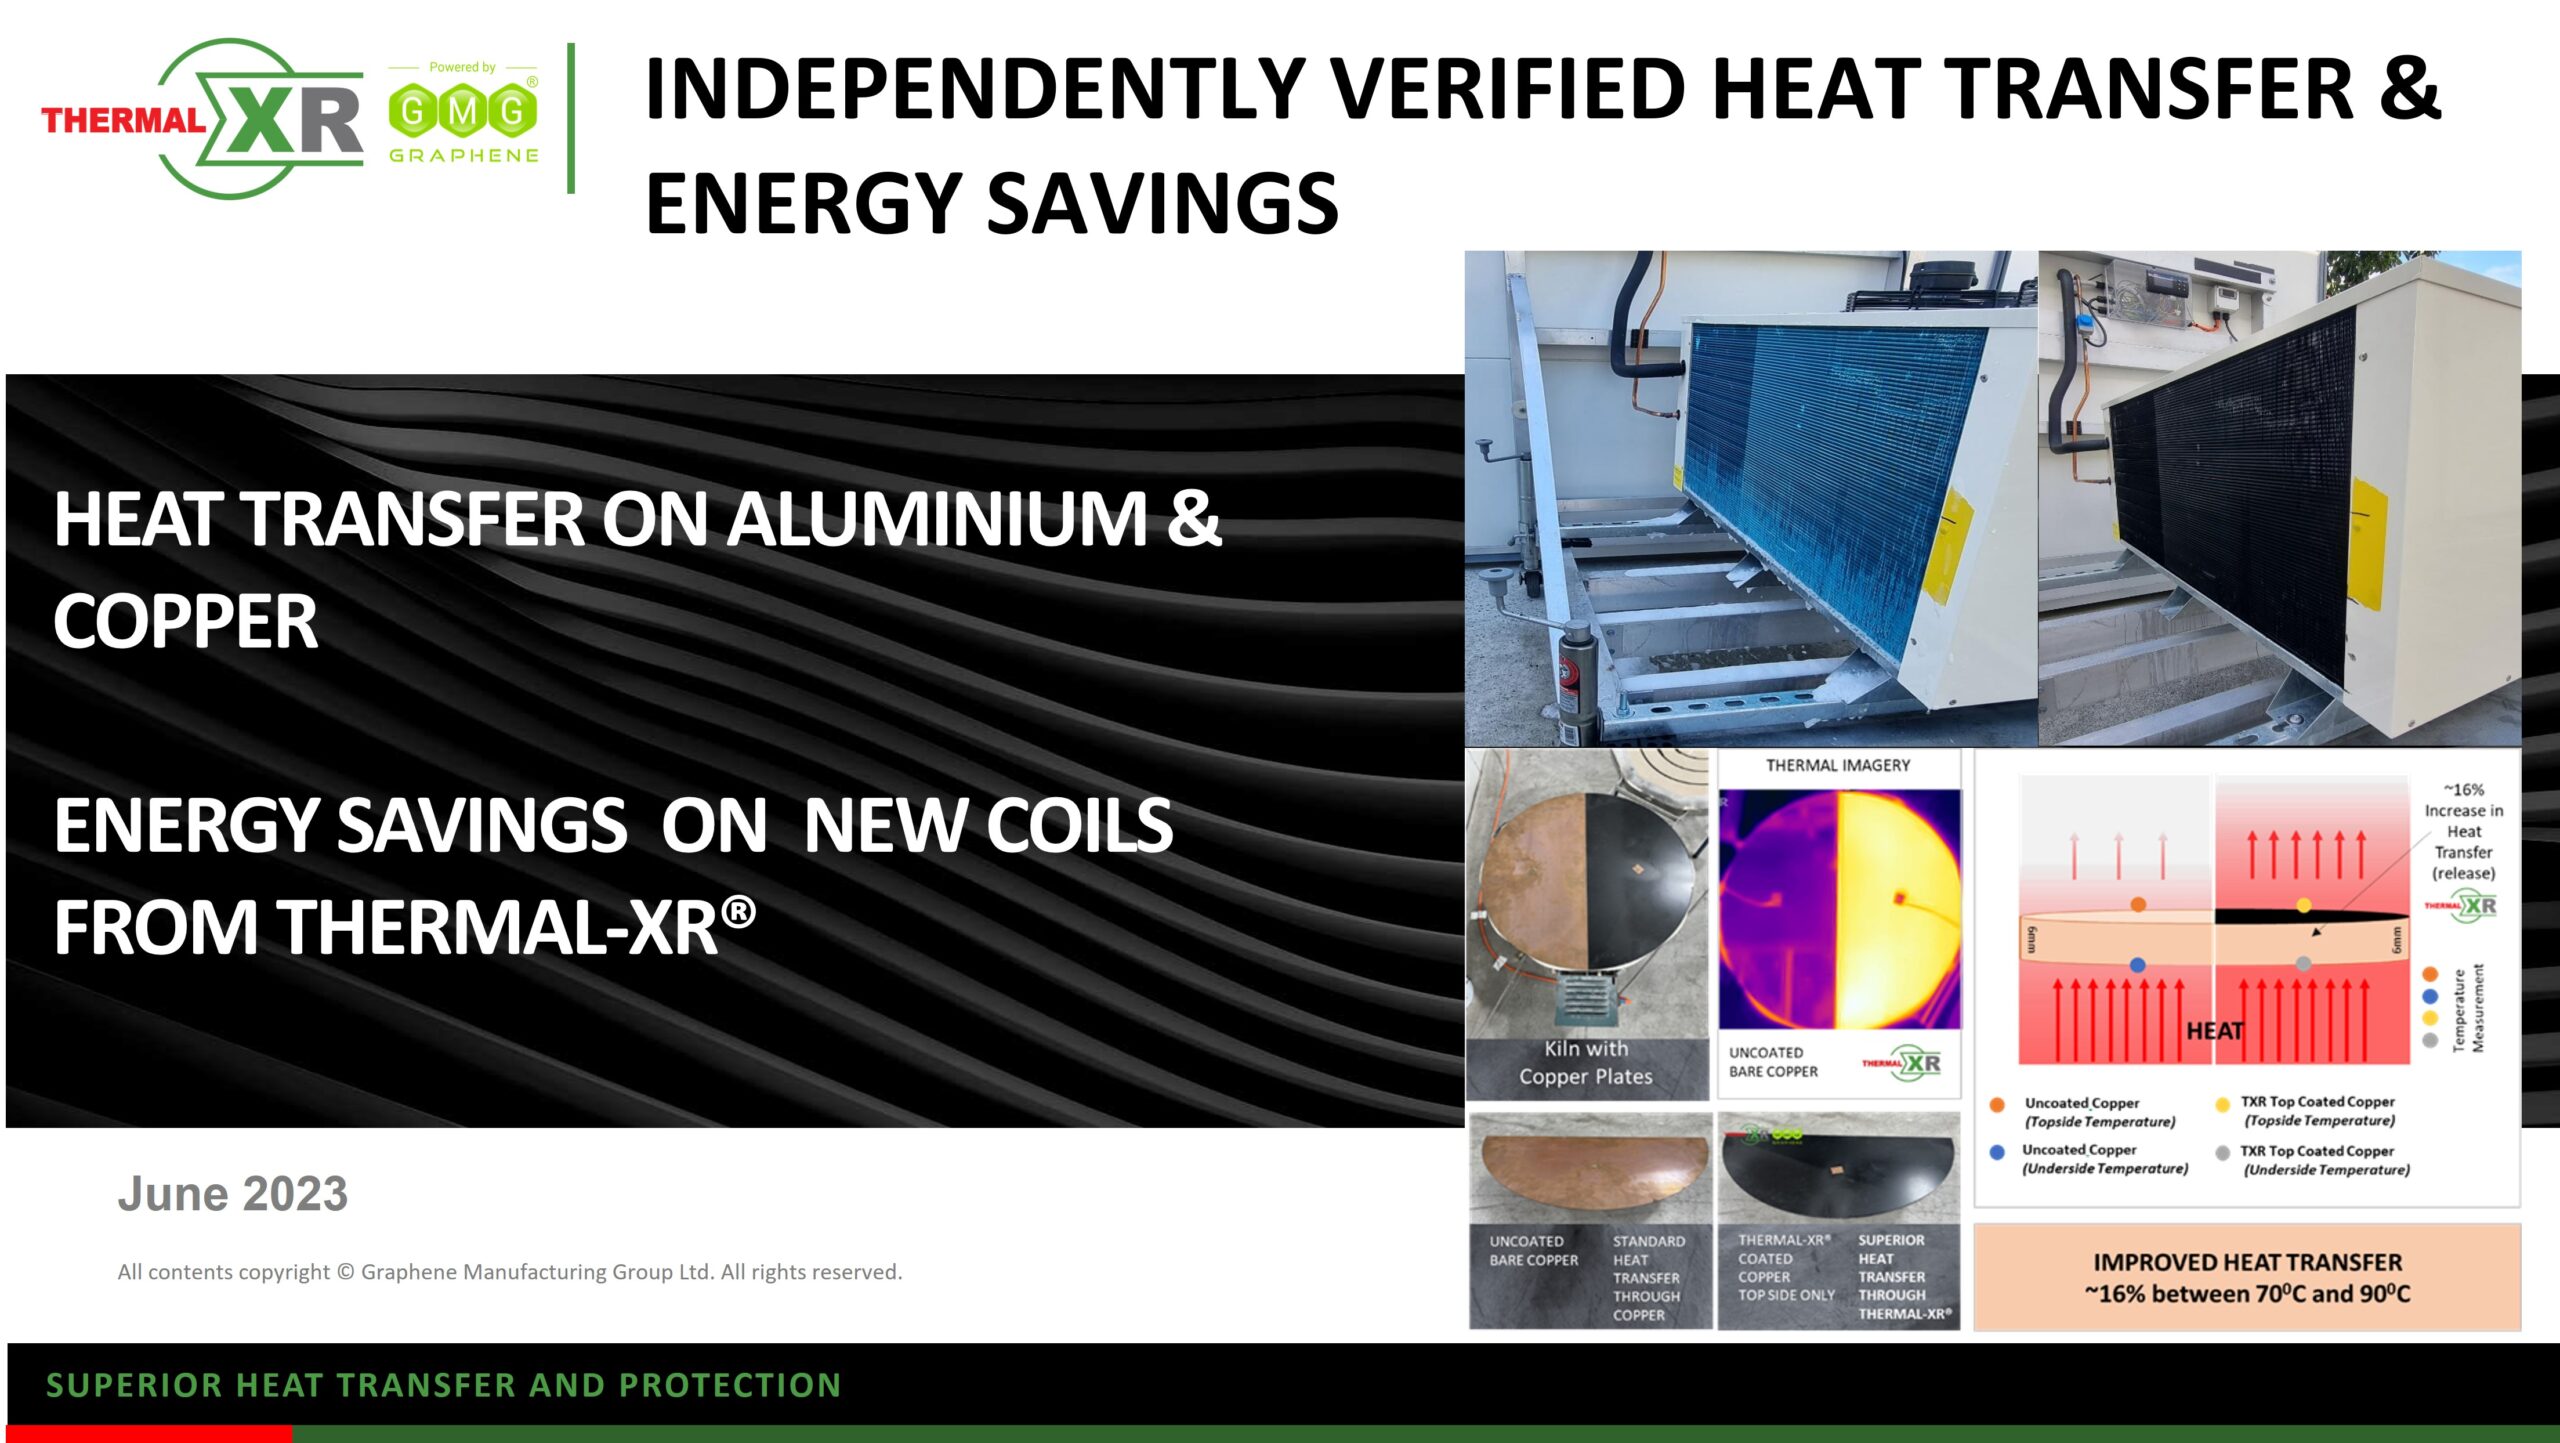 GMG 宣布独立验证的 THERMAL-XR® 传热和节能结果